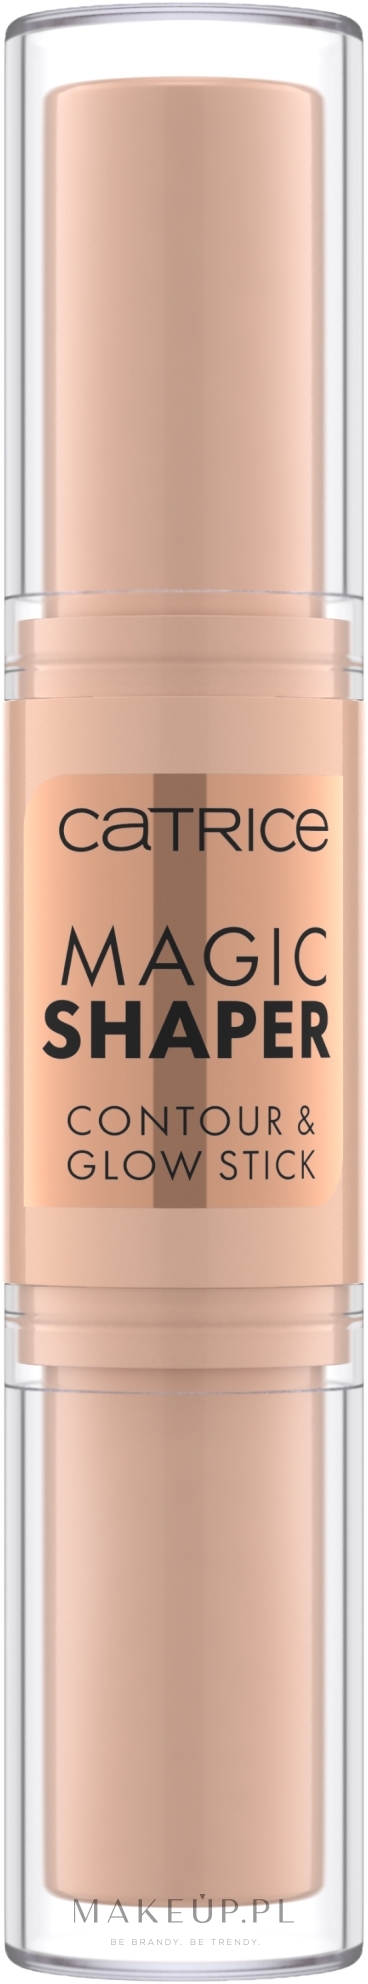 Catrice Magic Shaper Contour & Glow Stick - Dwustronna kredka do  konturowania w sztyfcie